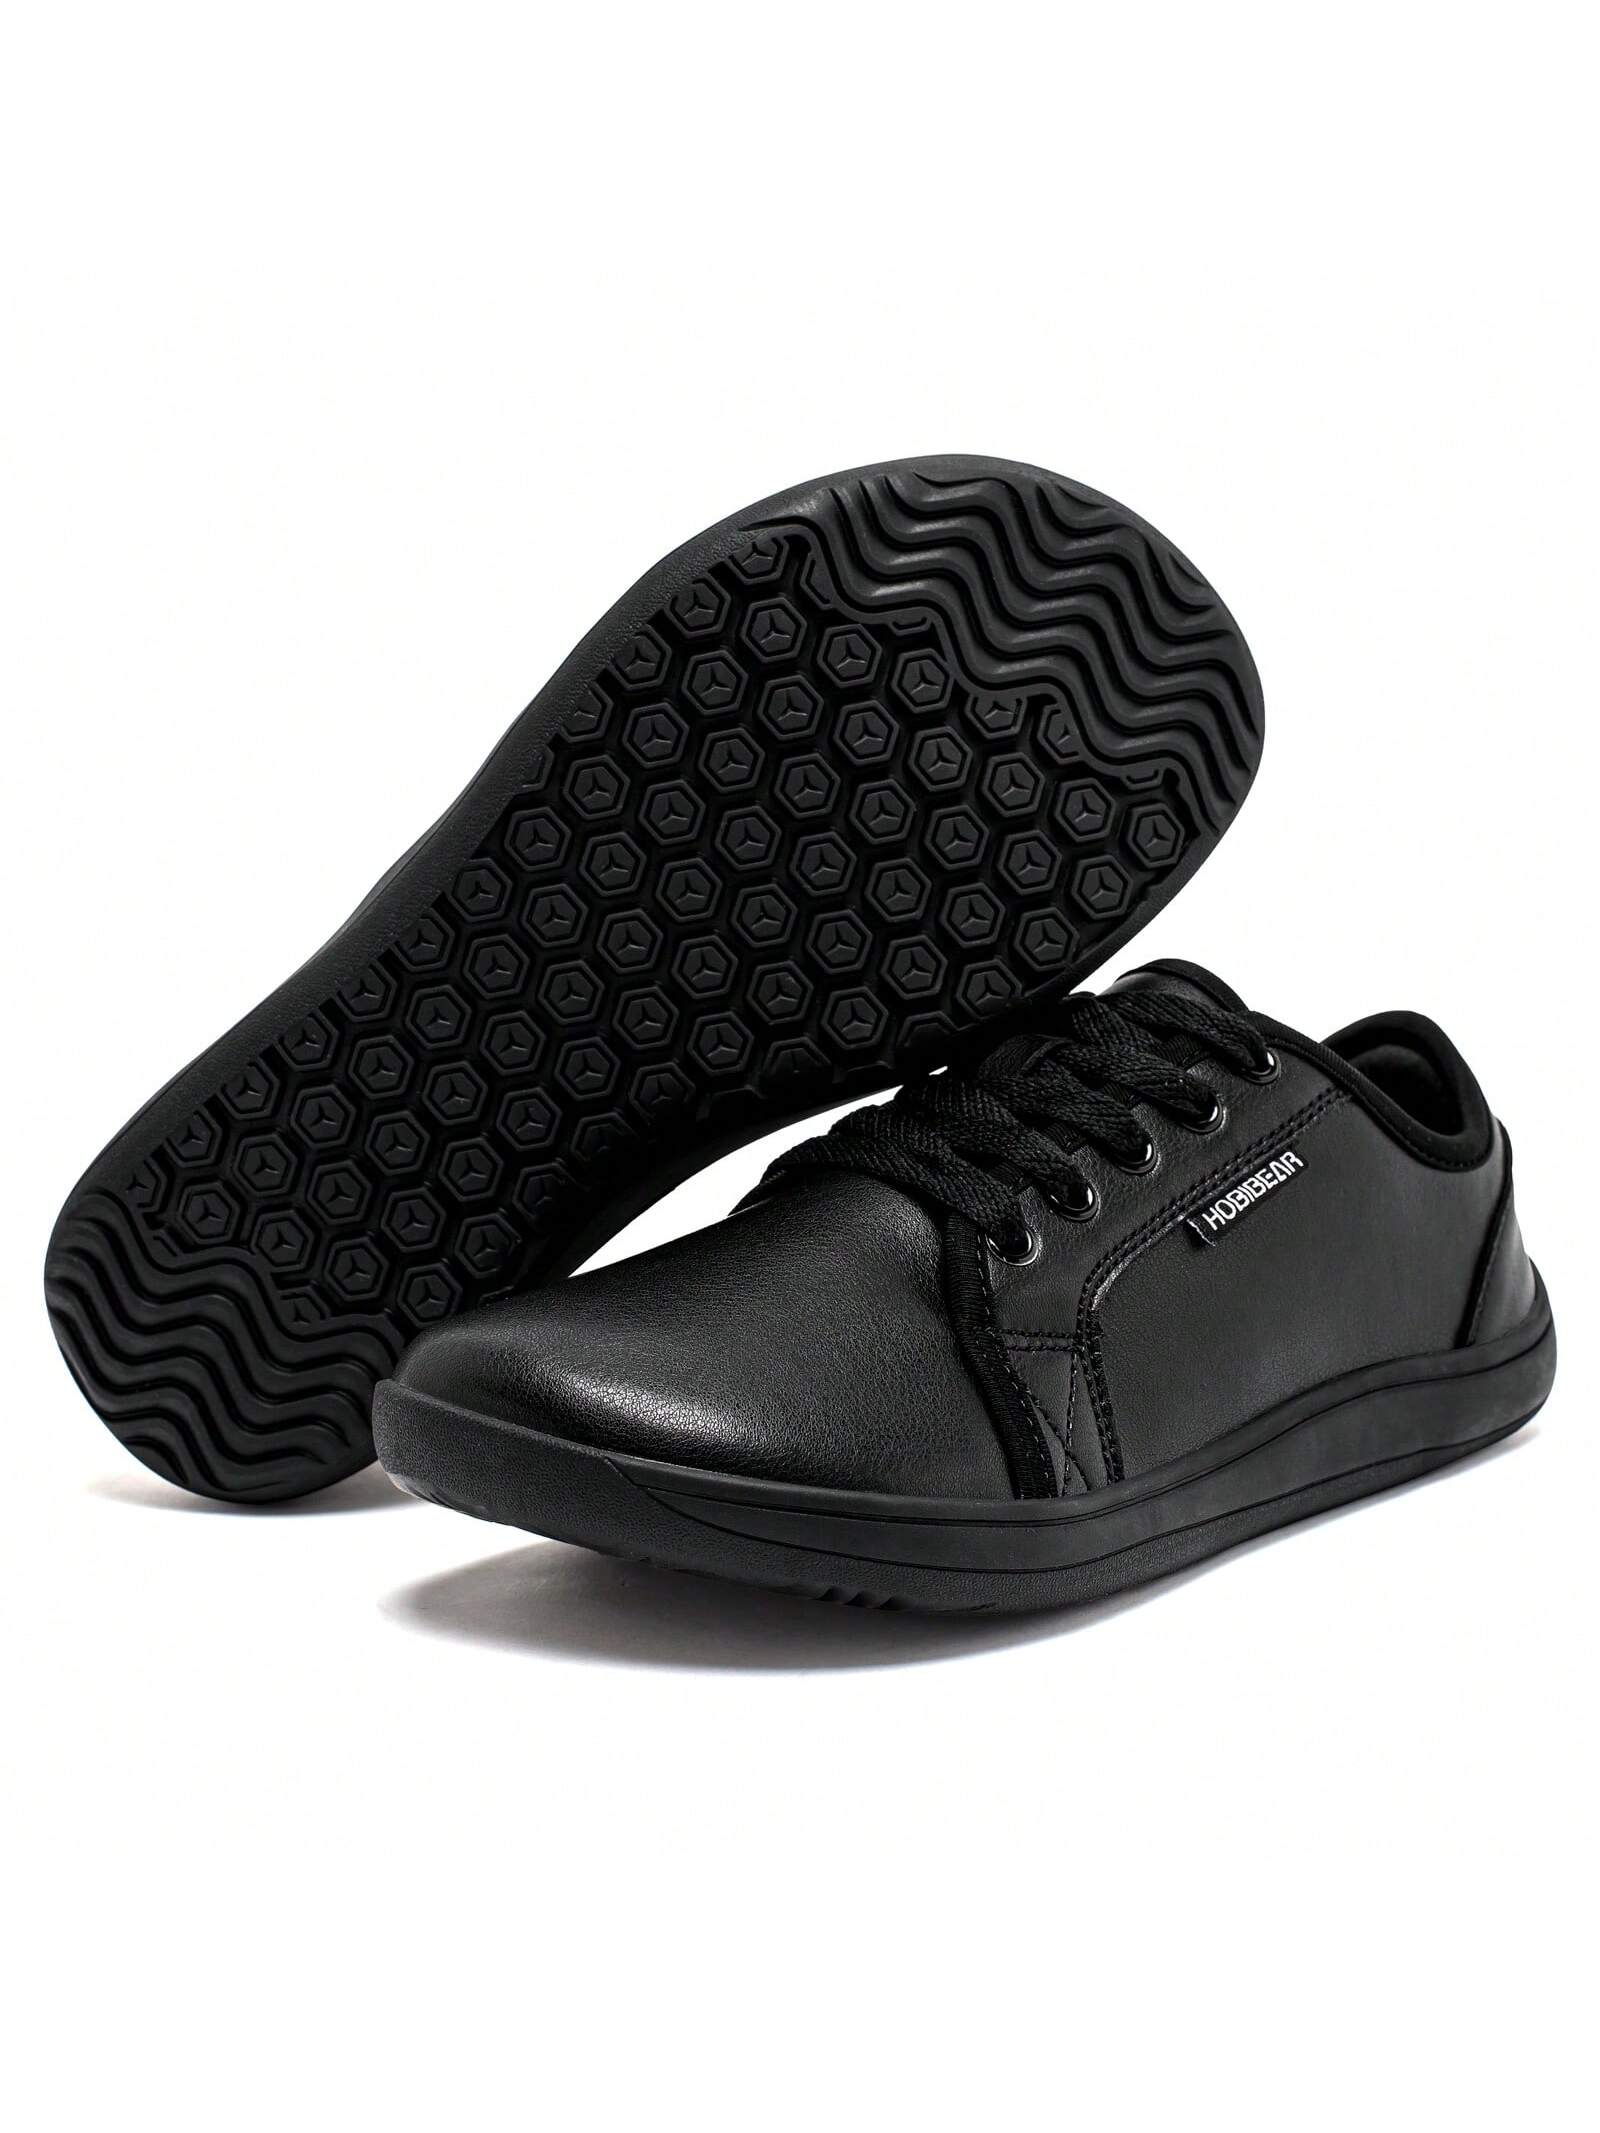 Спортивная обувь унисекс с широким носком, черный фотографии